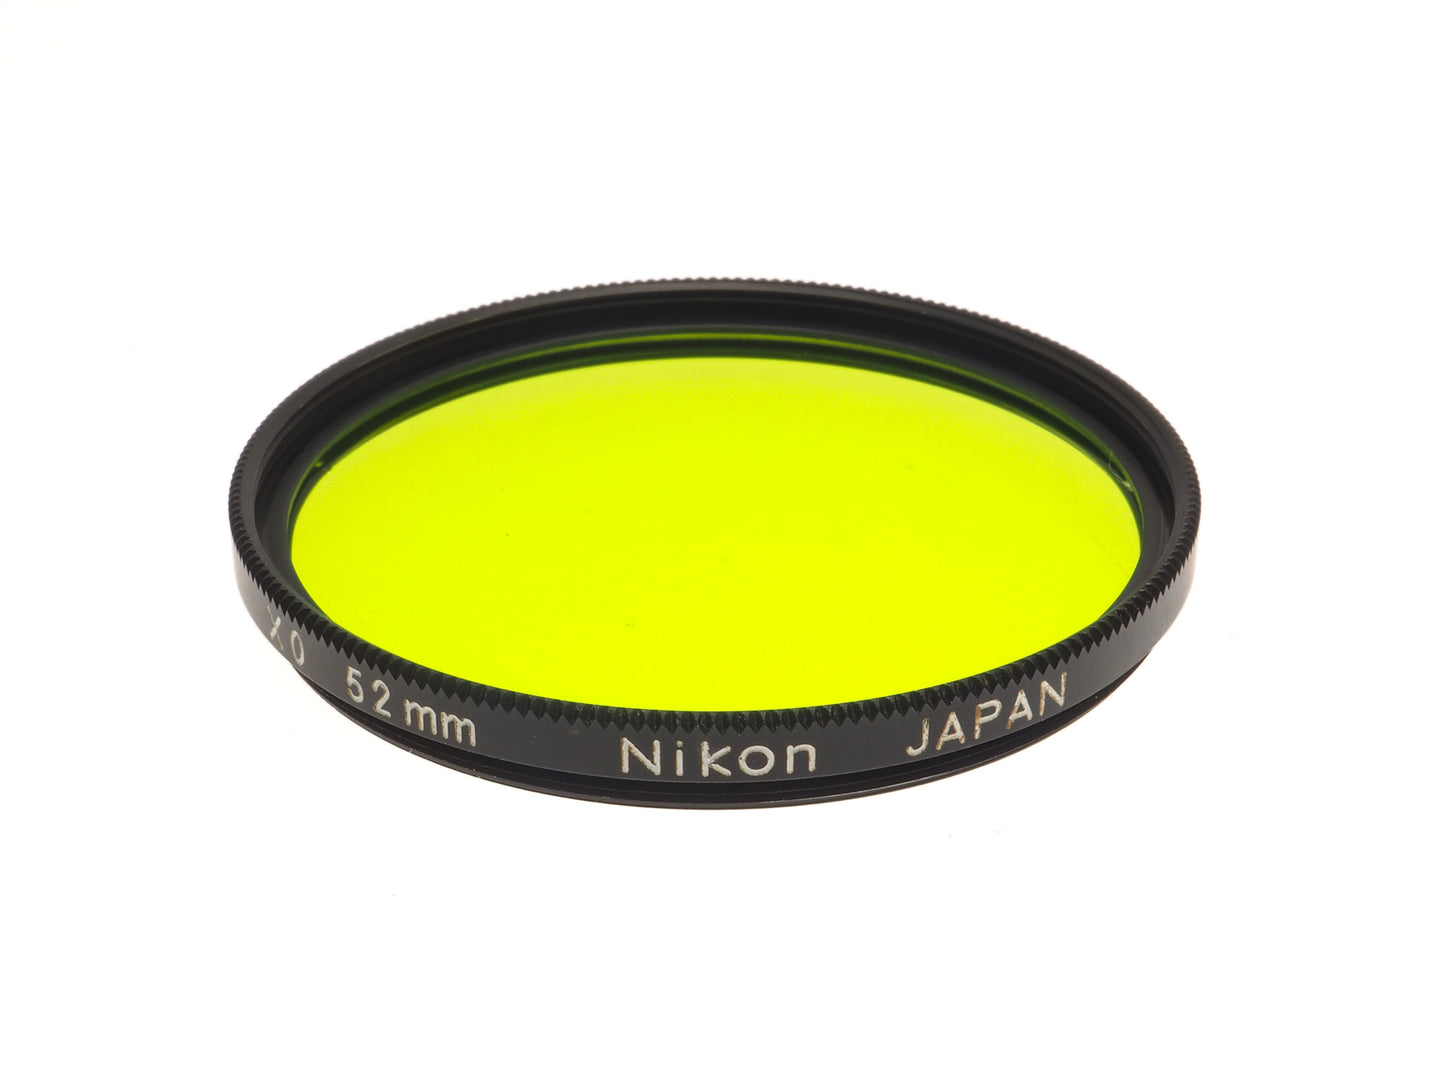 Nikon 52mm Green Filter X 0 - Accessory